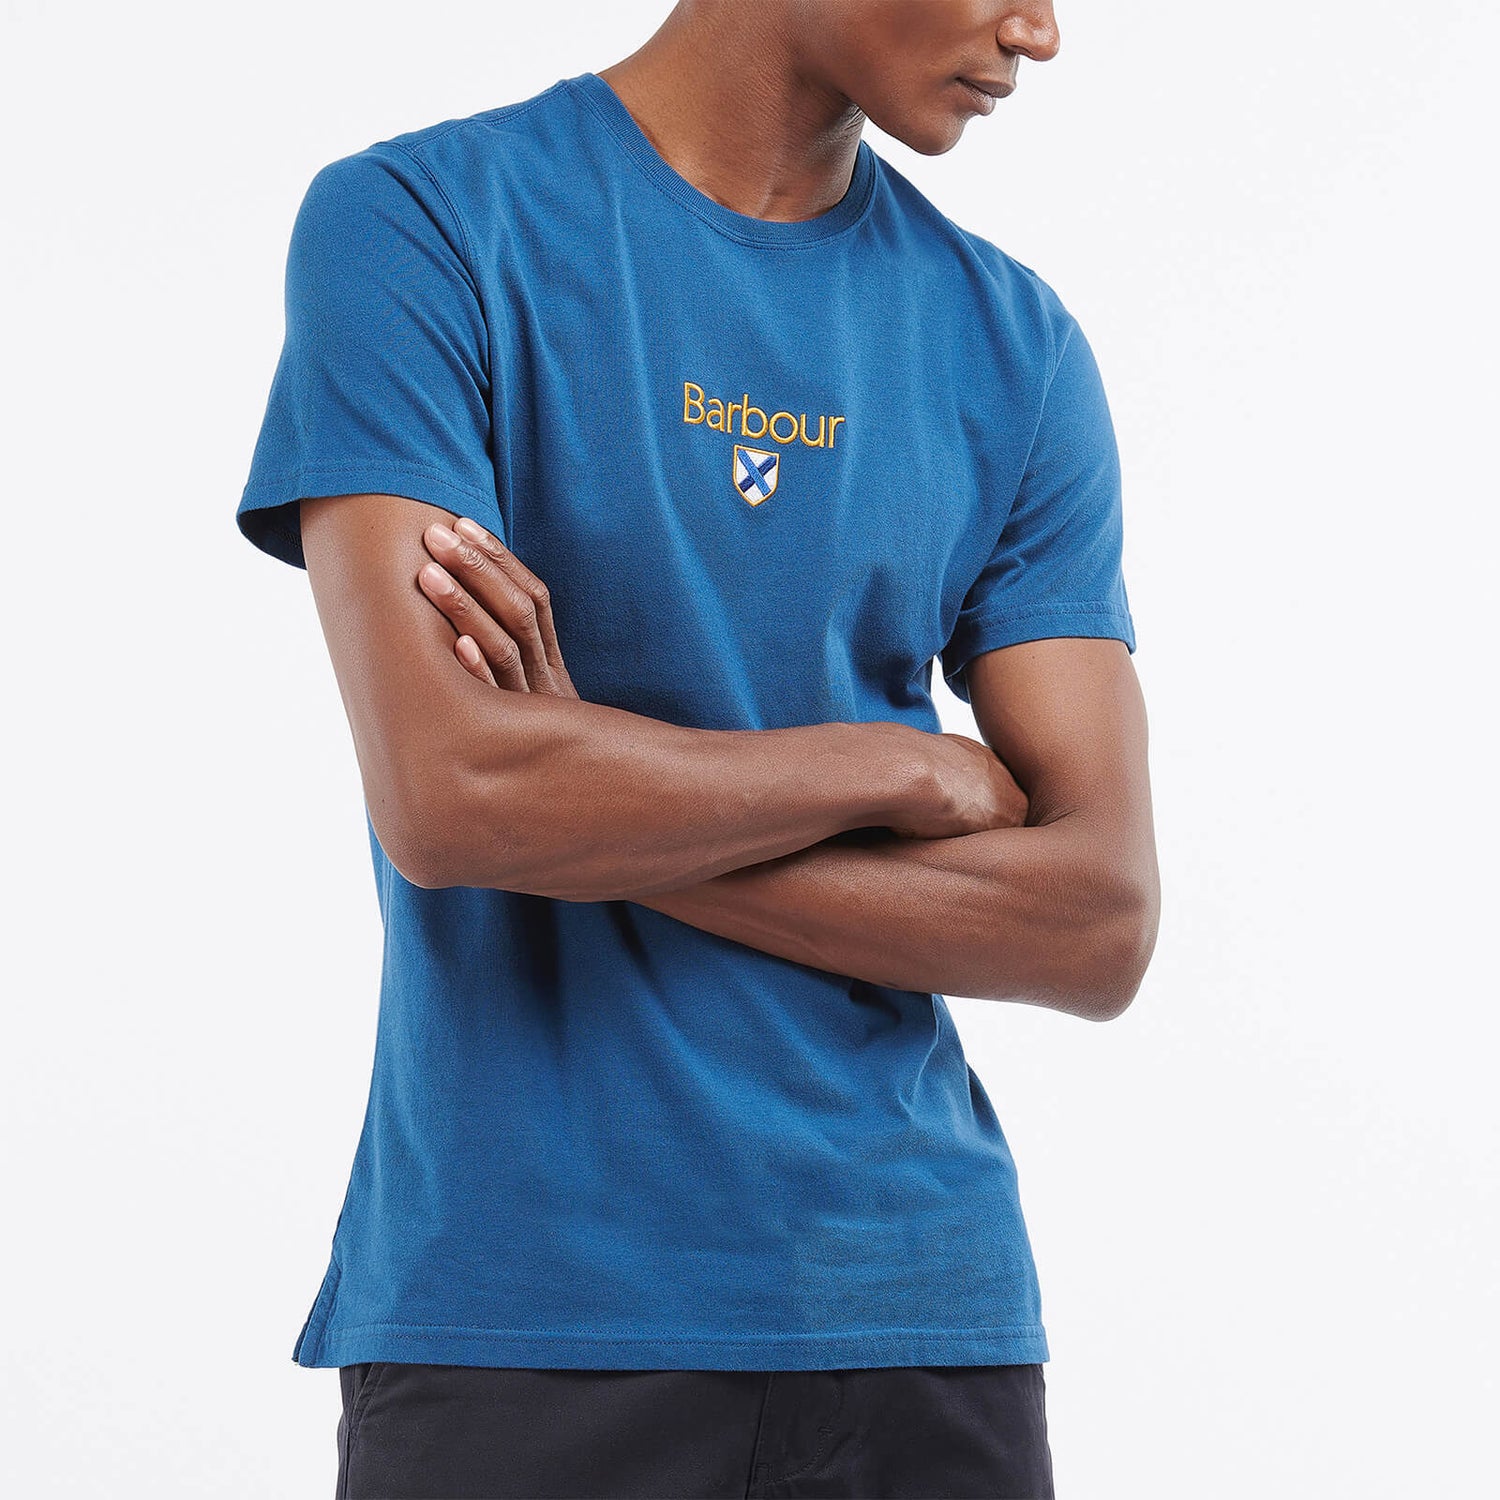 Barbour Heritage Men's Emblem T-Shirt - Deep Blue - S